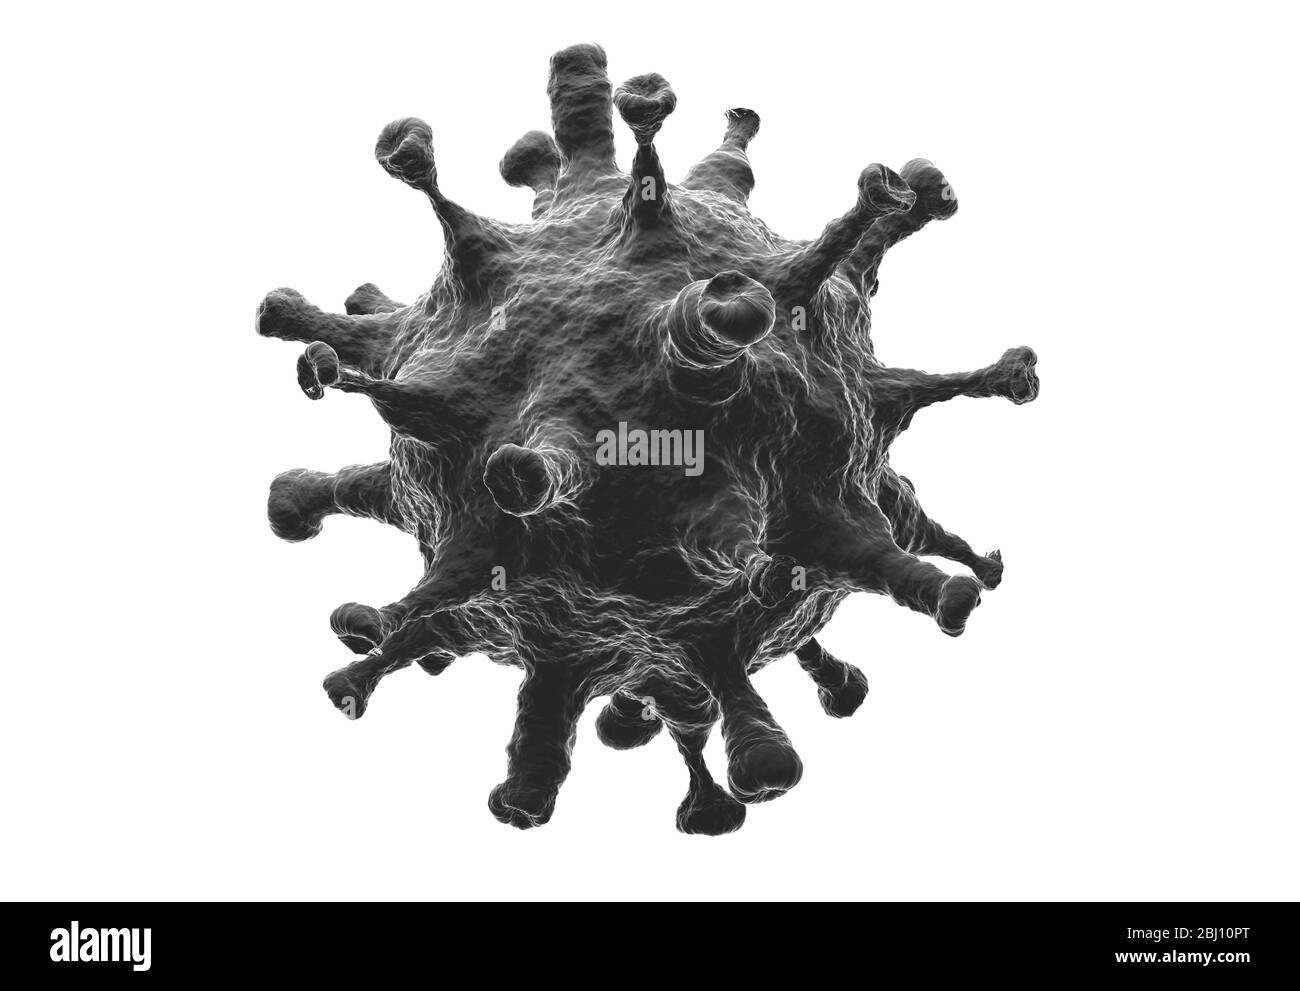 Células de la enfermedad de coronavirus, representación tridimensional. Imagen ampliada de una célula vírica nuevo 2019 Novel Coronavirus (COVID-19) infección por gérmenes patógenos célula de brote w Foto de stock